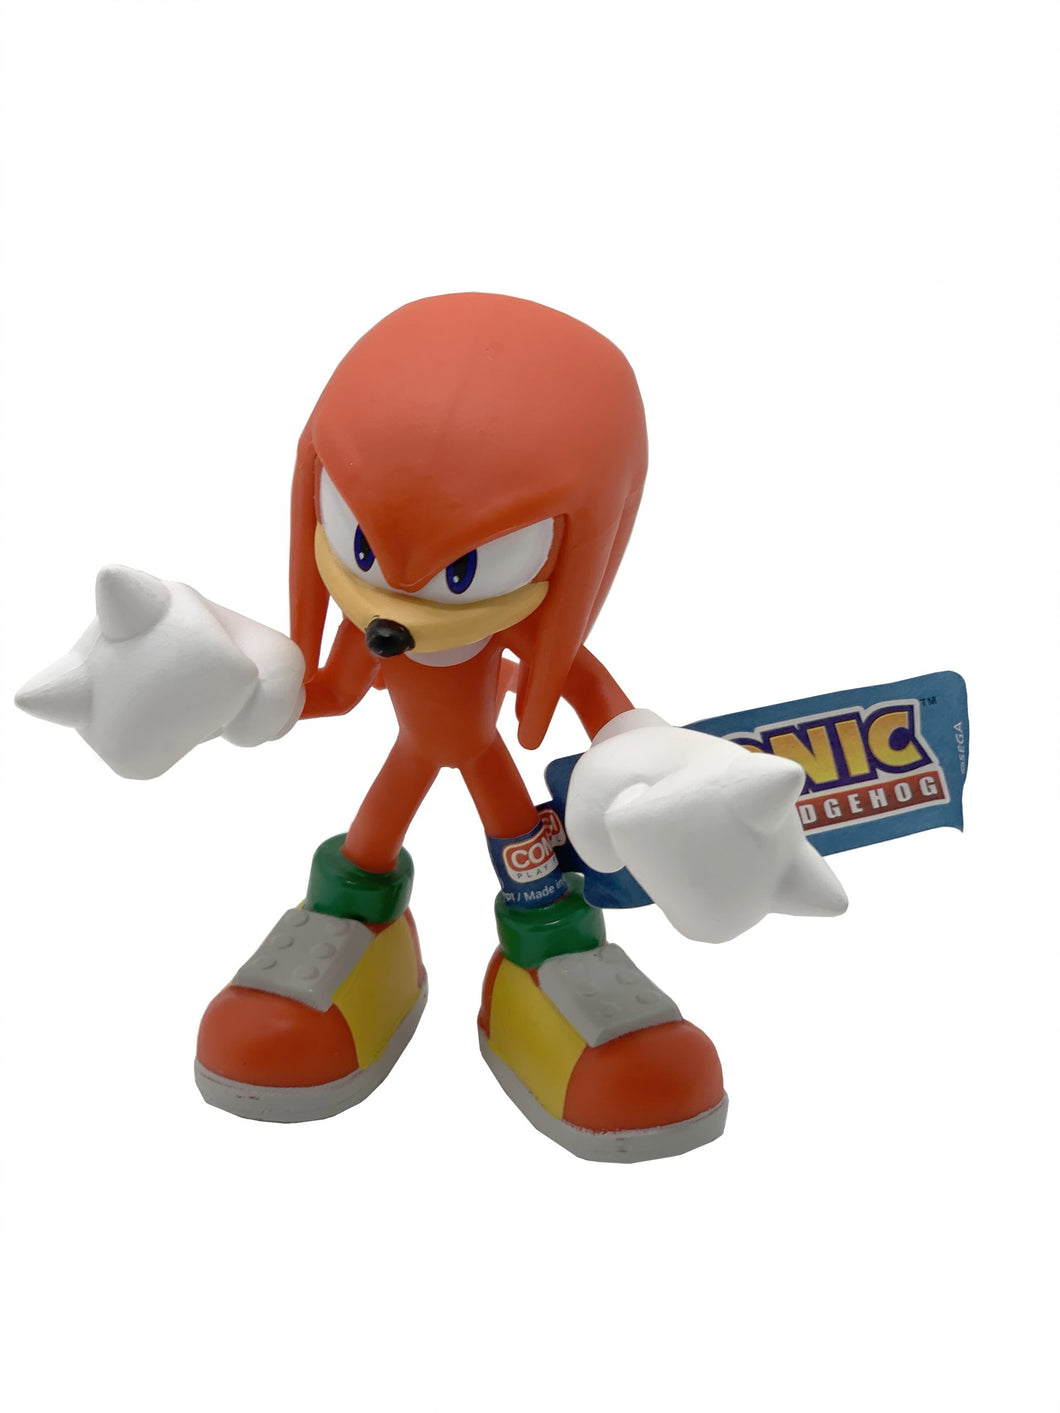 Sonic The Hedgehog Knuckles Figura de plástico de 9 cm Comansi 90312 color rojo producto oficial recomendado de 3 a 99 años